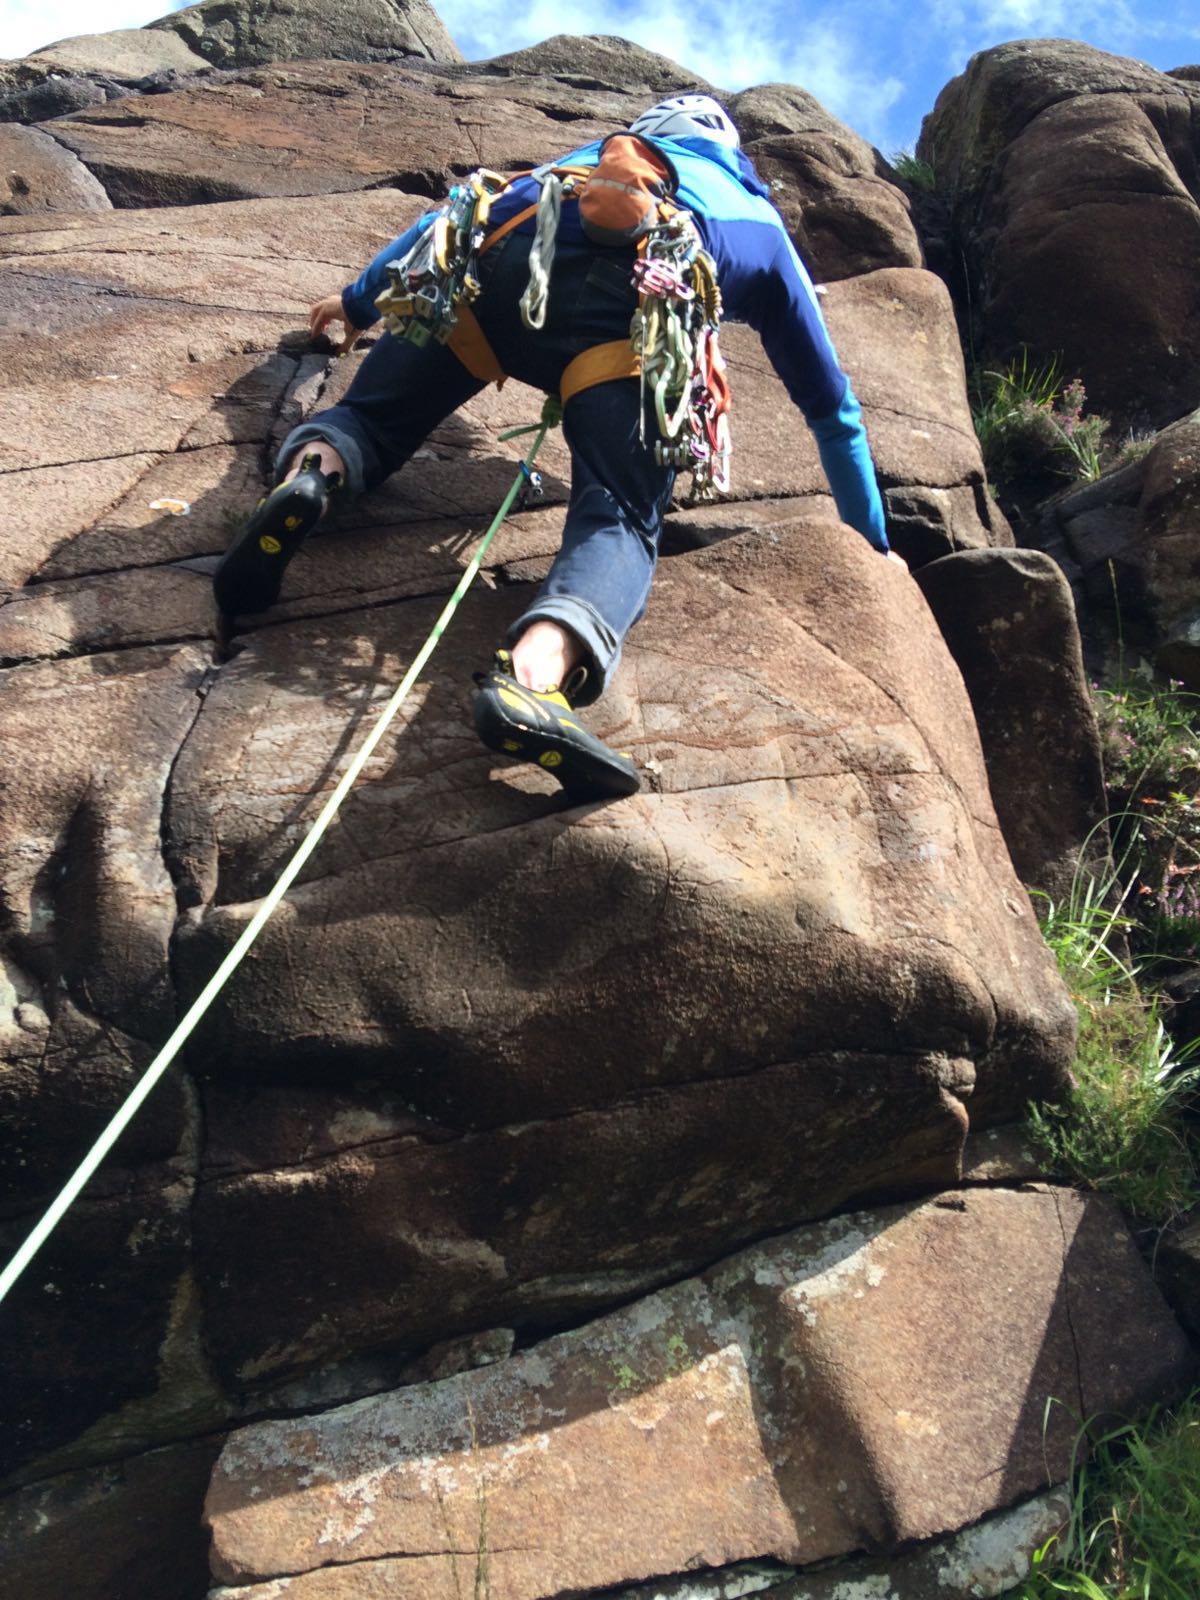 A climber enjoying climbing a rockface